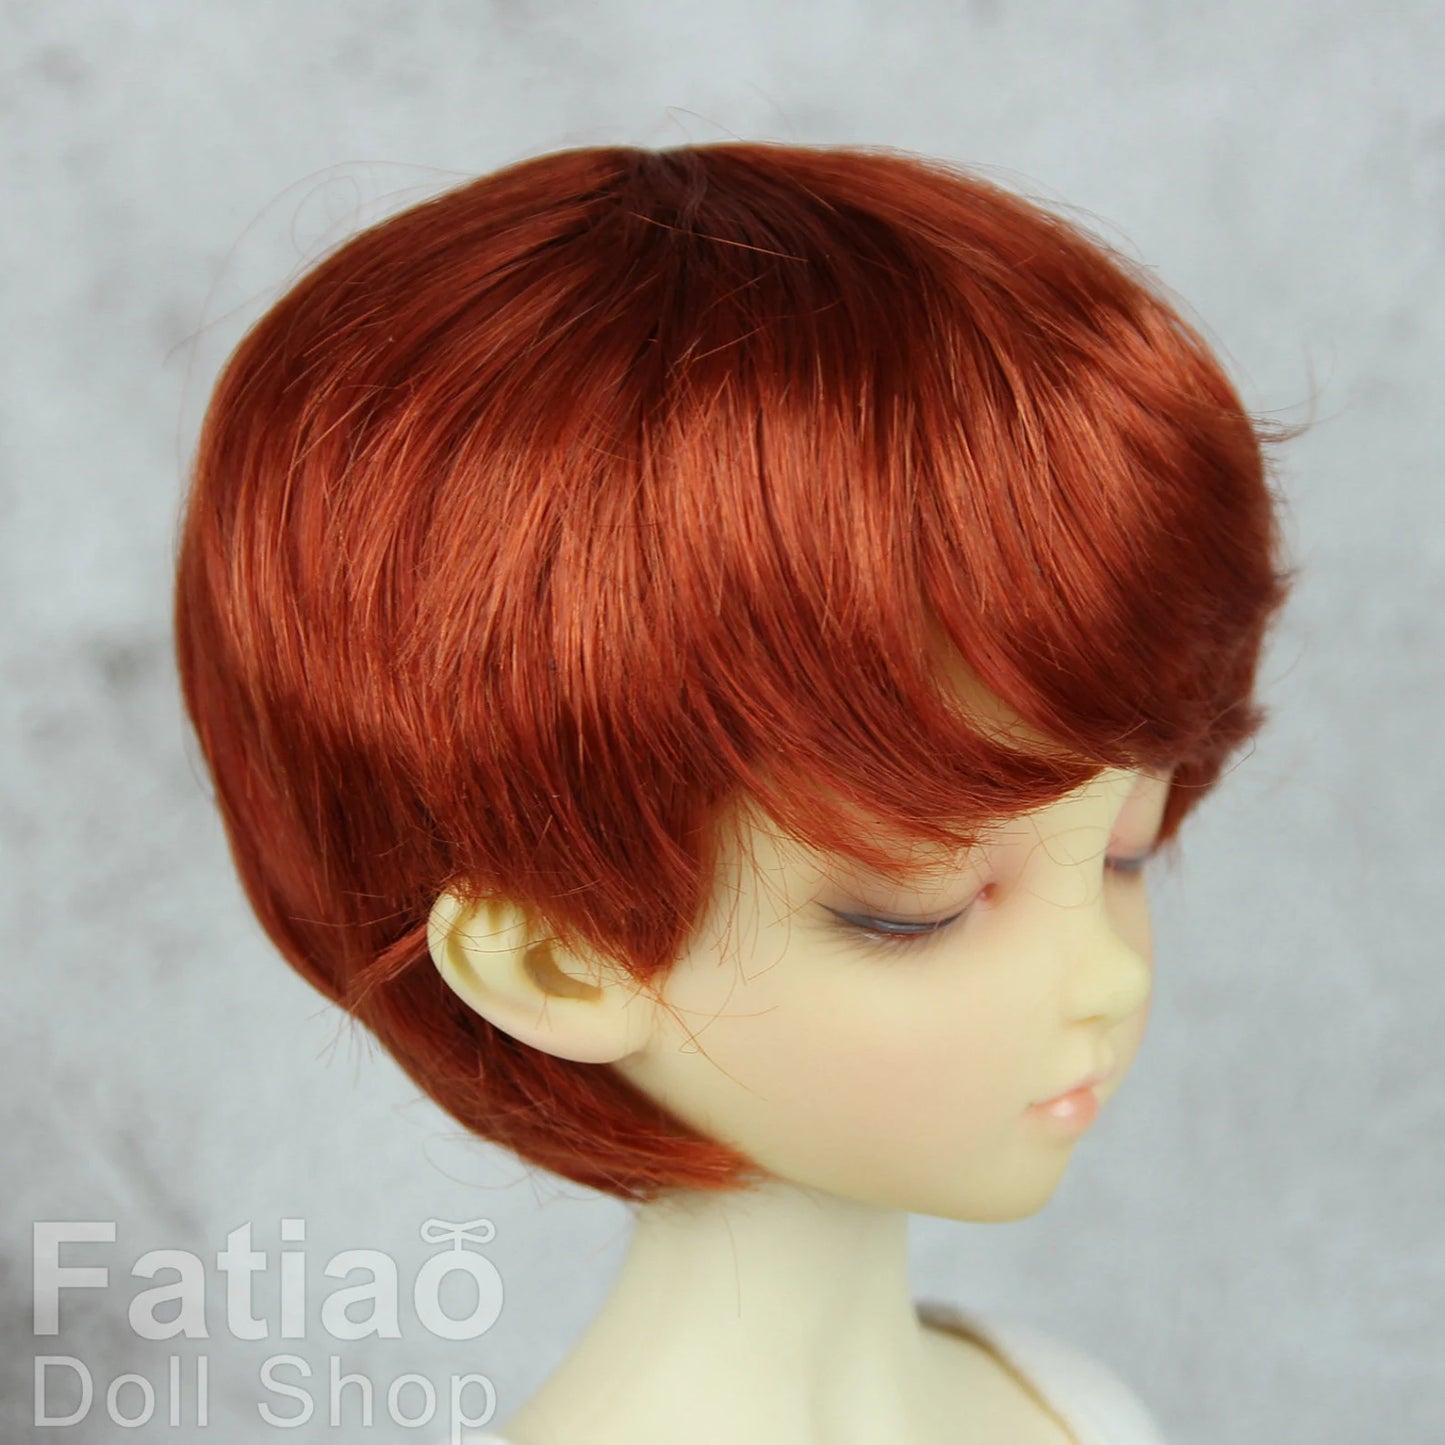 【Fatiao Doll Shop】FWF-053 娃用假髮 多色 / 7-8吋 BJD 4分 iMda3.0